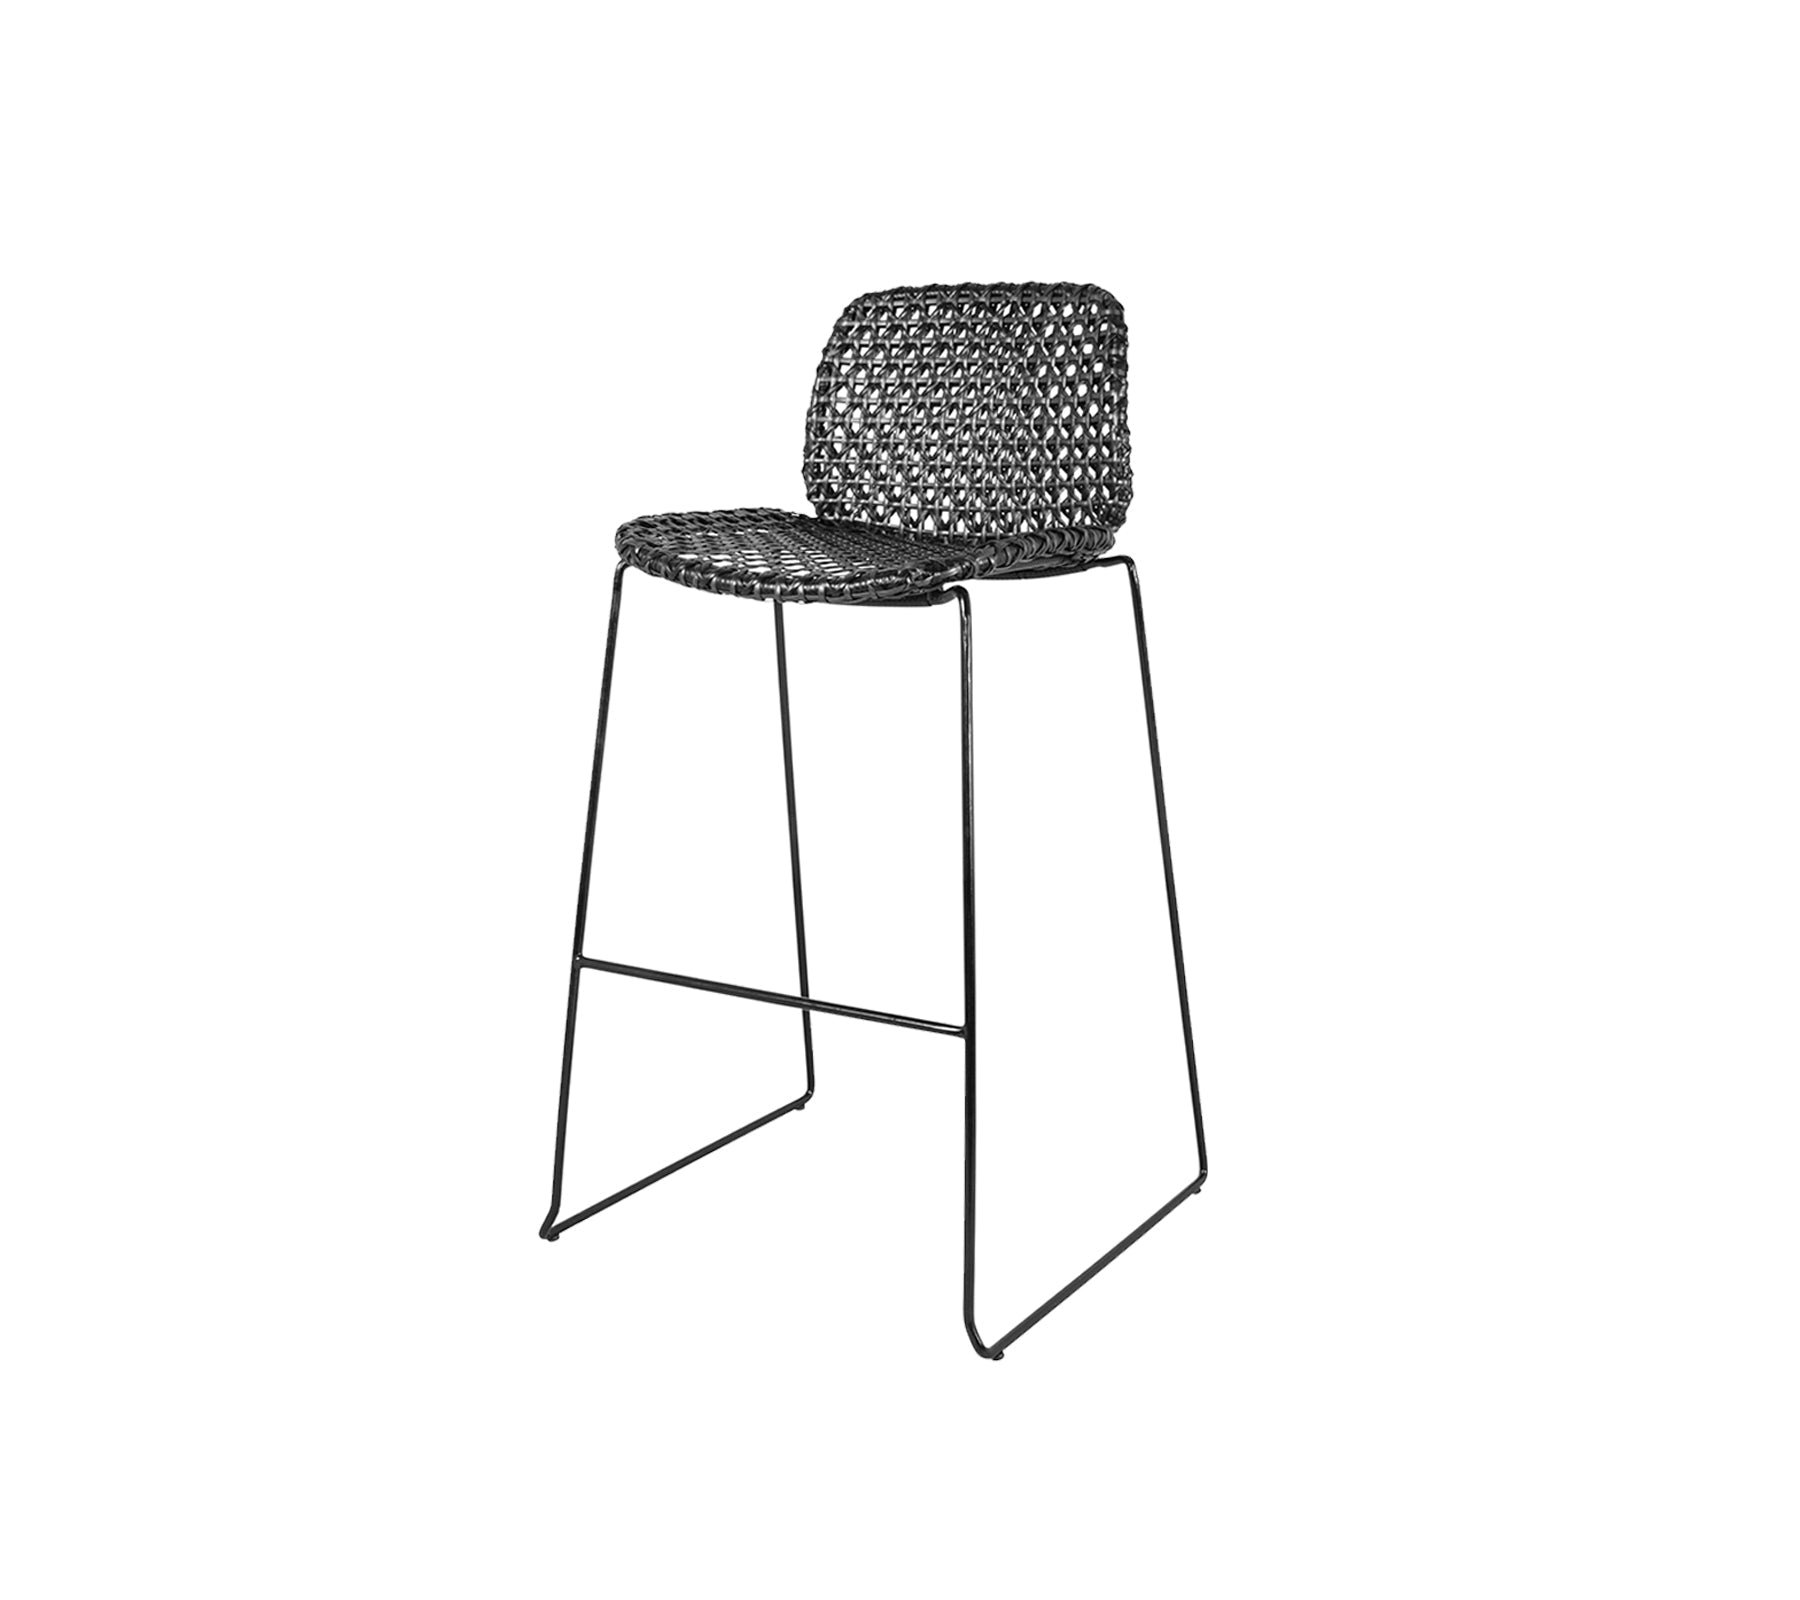 Cane-line Vibe Bar Chair 54106SG